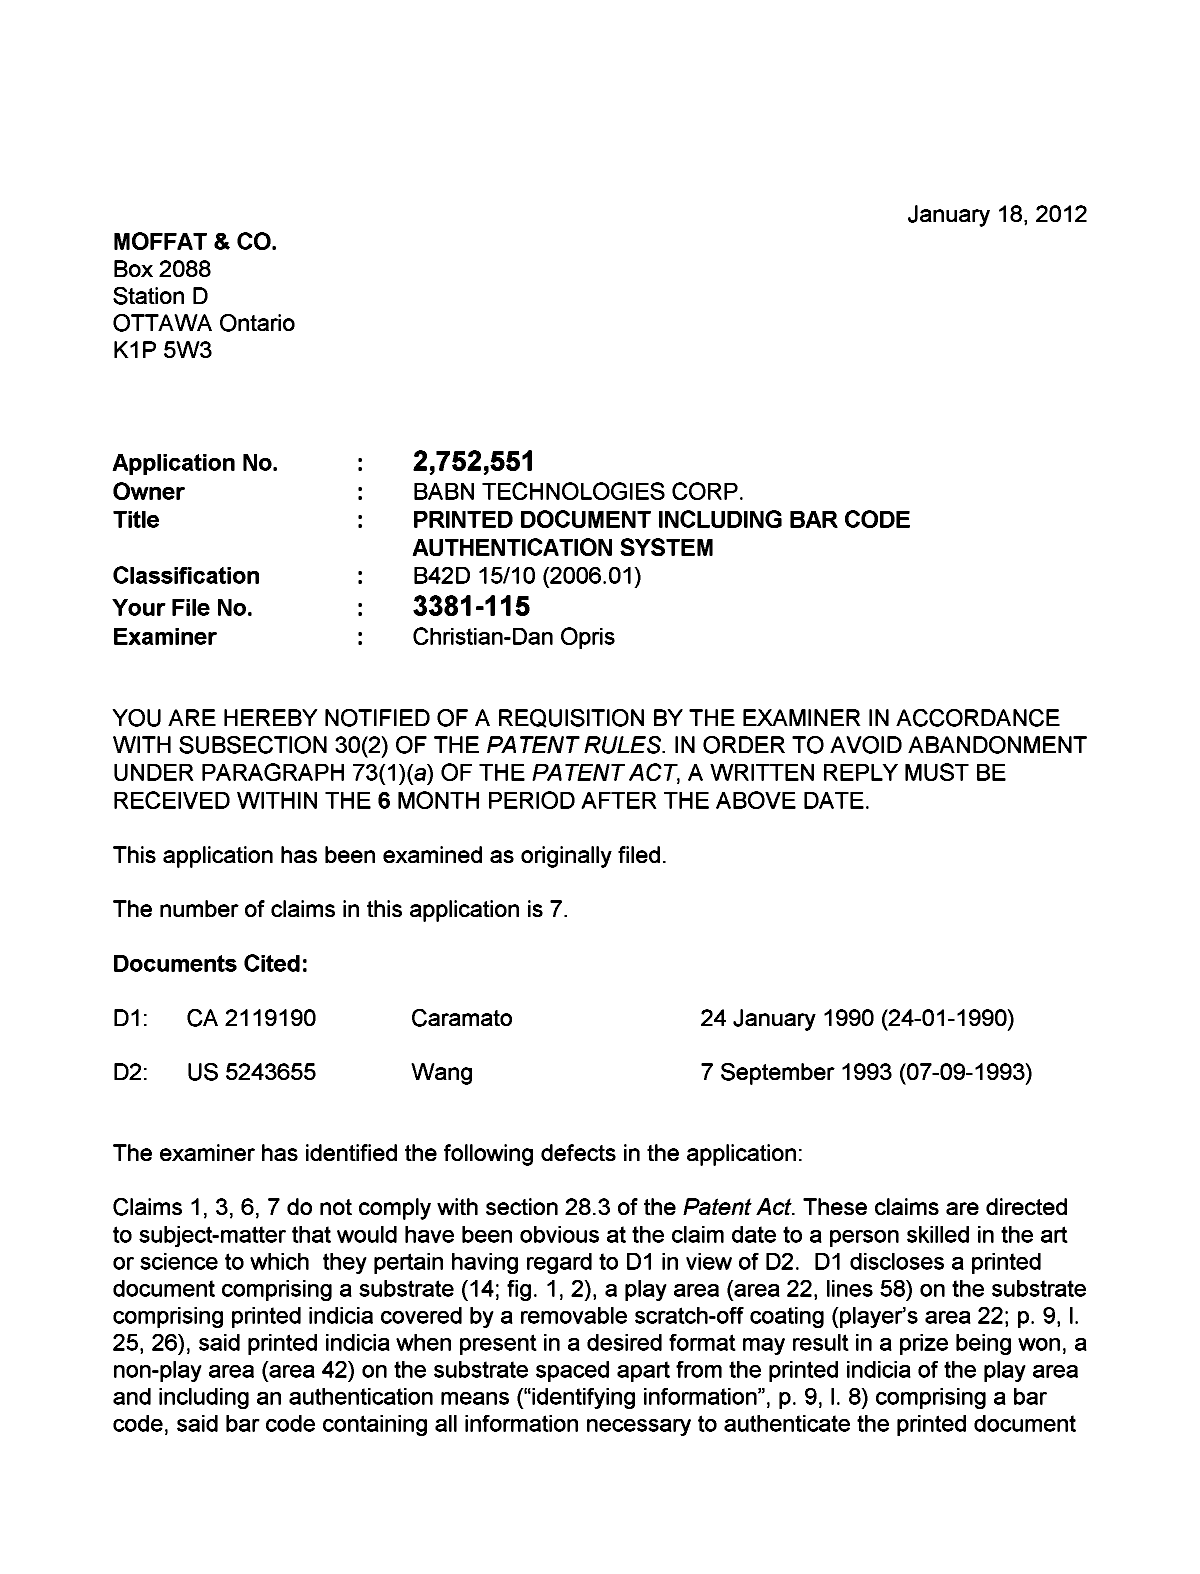 Document de brevet canadien 2752551. Poursuite-Amendment 20111218. Image 1 de 2